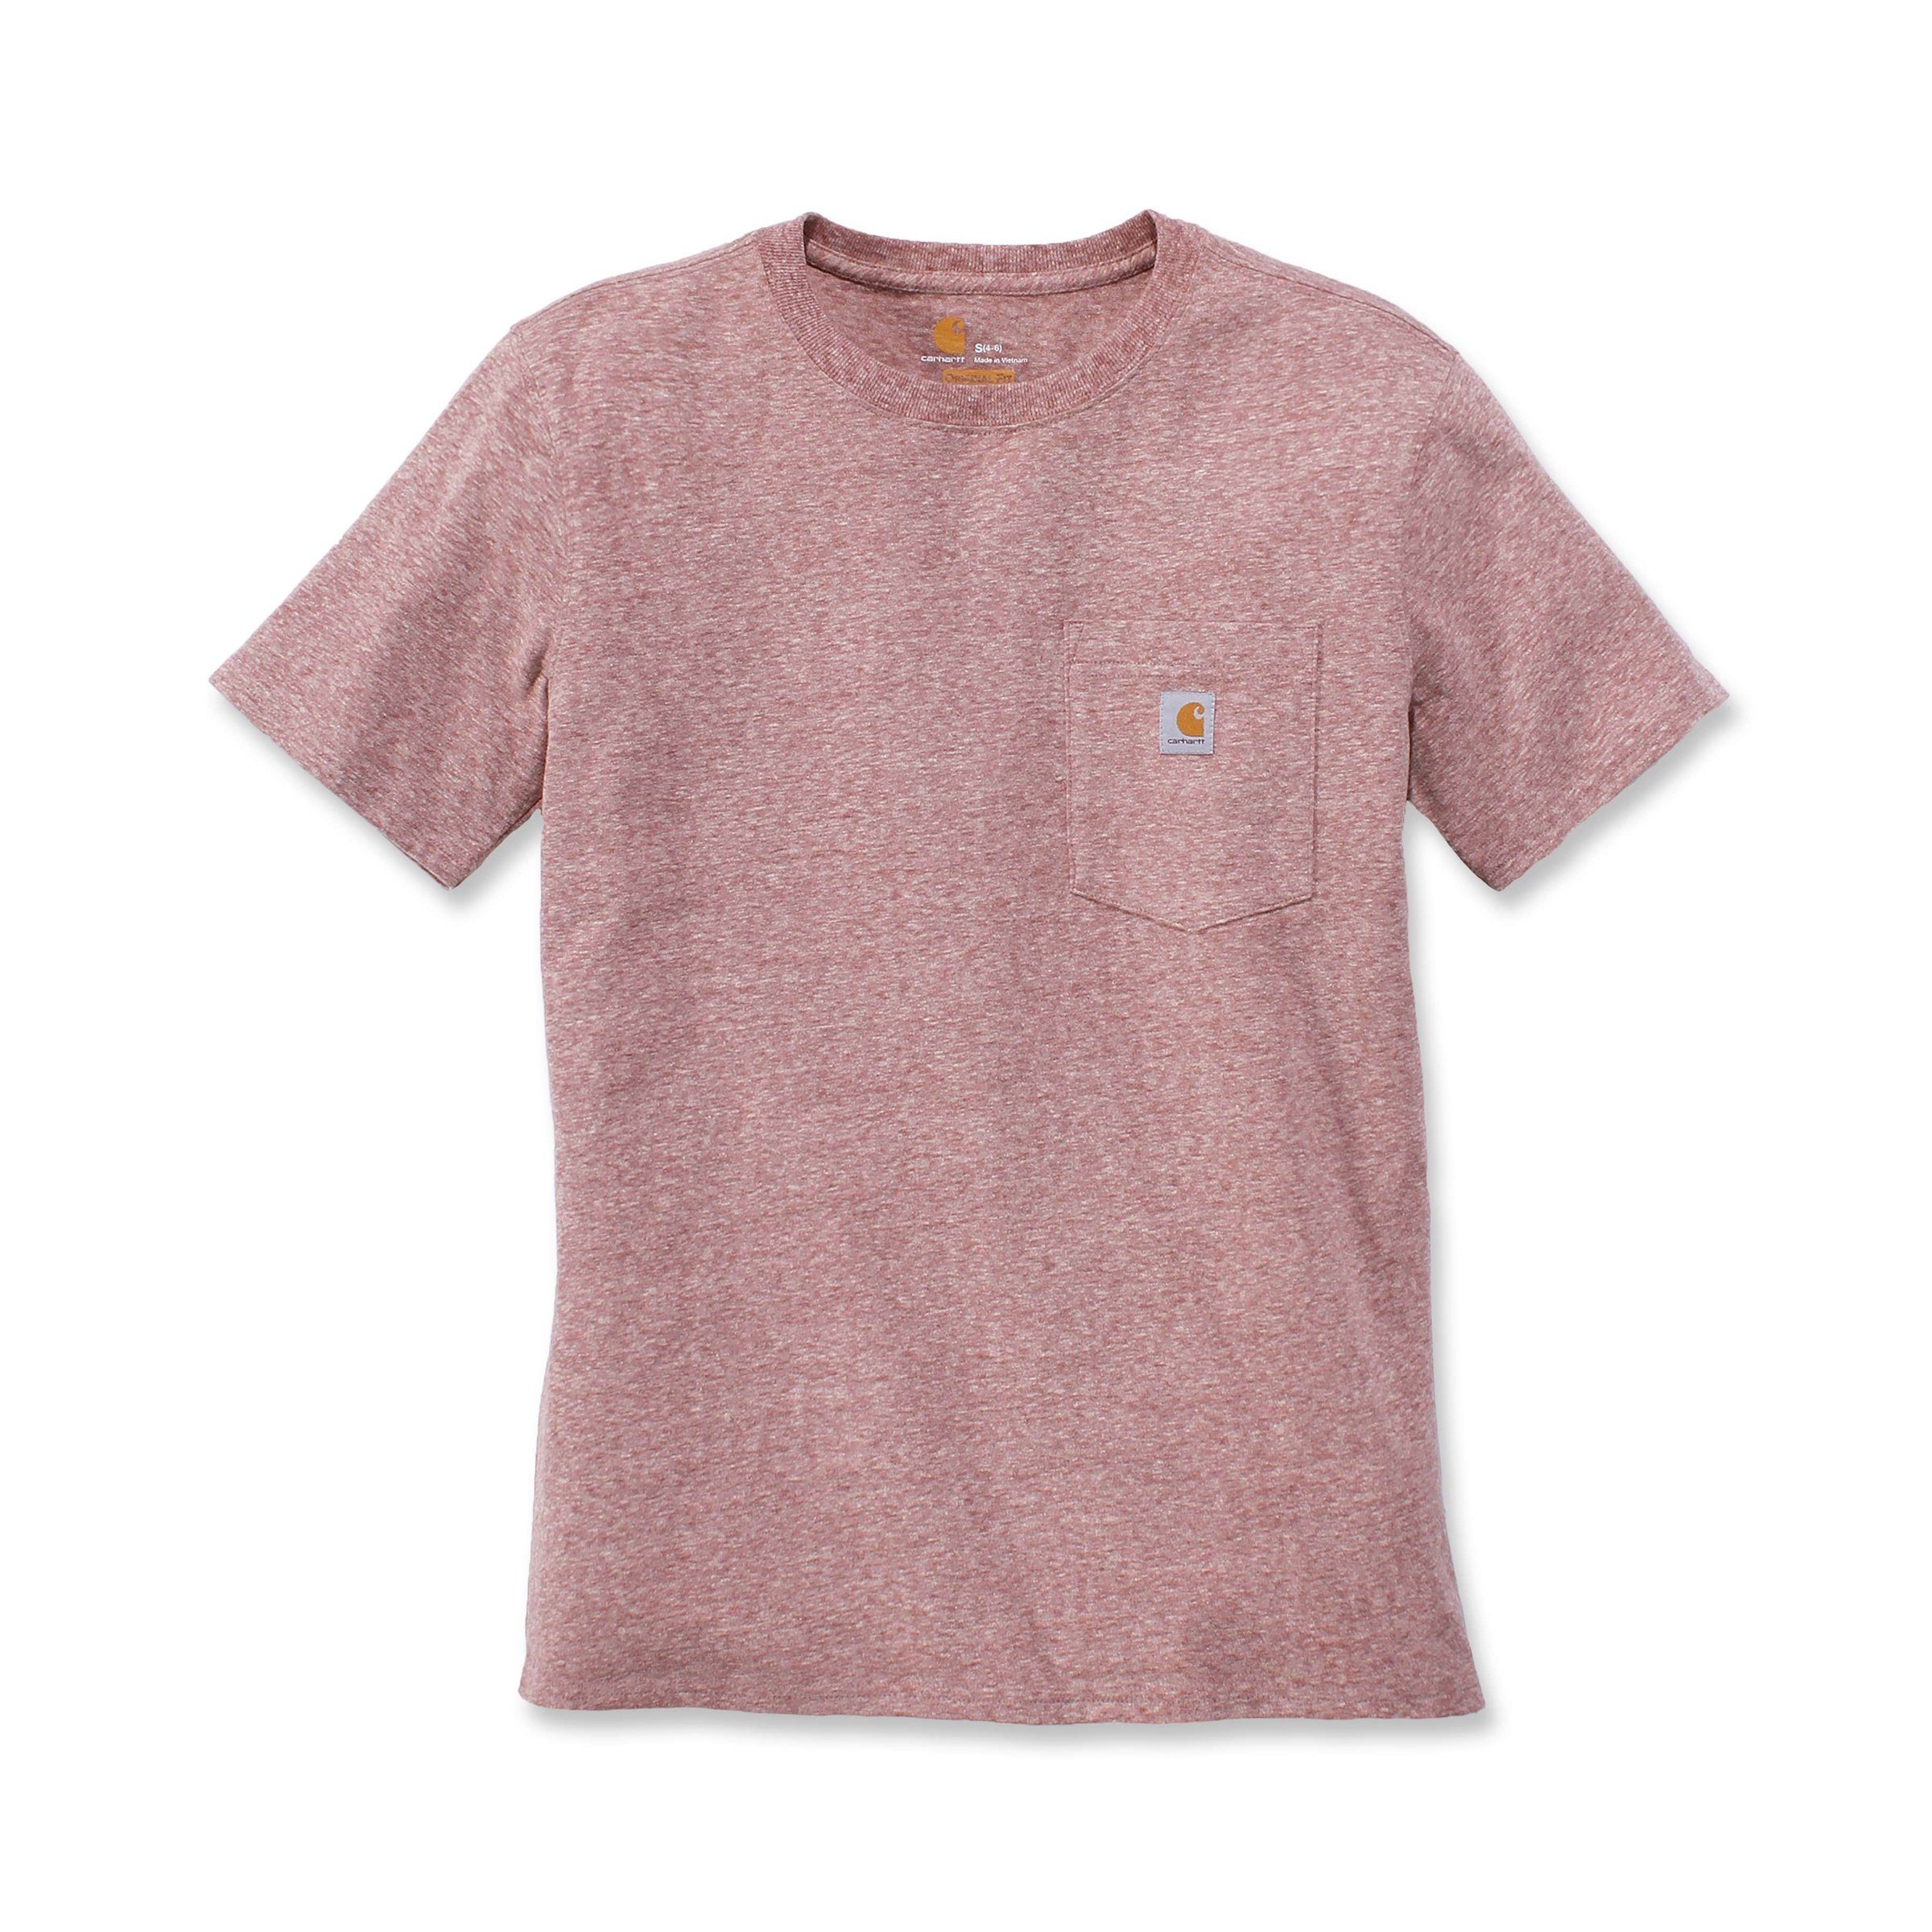 T-Shirt Fit T-Shirt Adult Short-Sleeve Pocket Carhartt Loose heather Carhartt Damen Heavyweight hibiscus